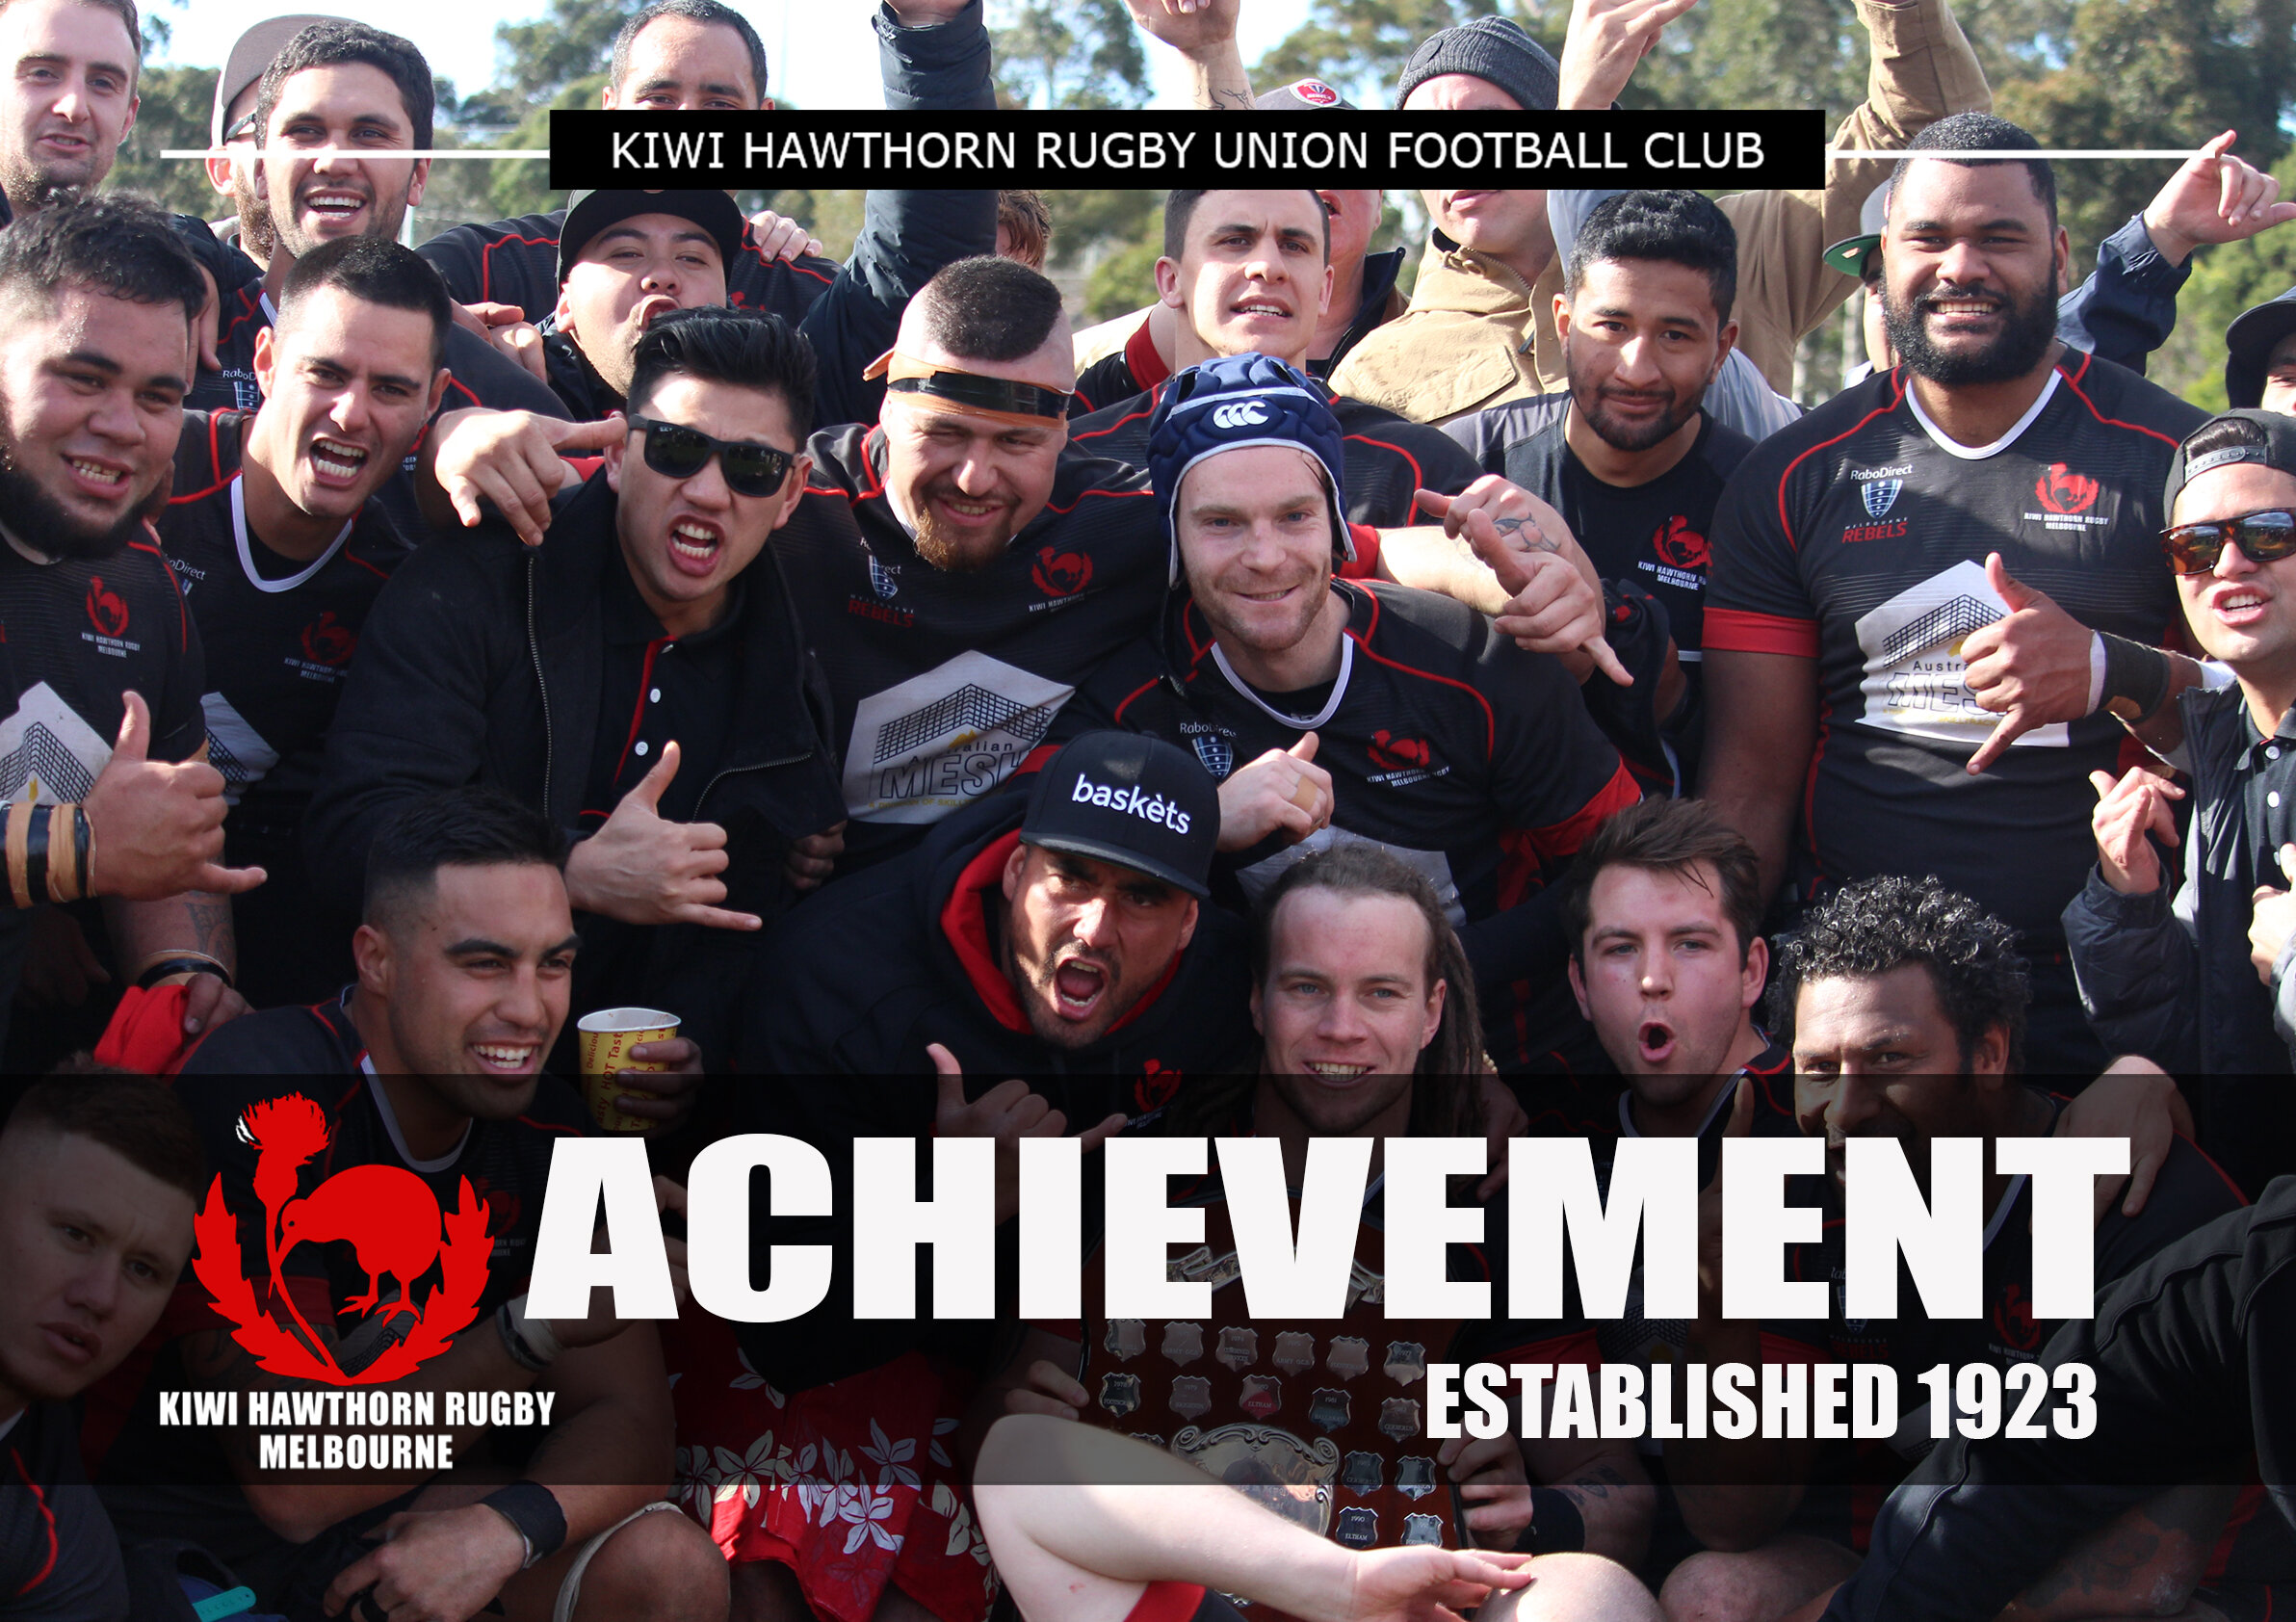 Kiwi Hawthorn Rugby Club Values Achievement (Copy)